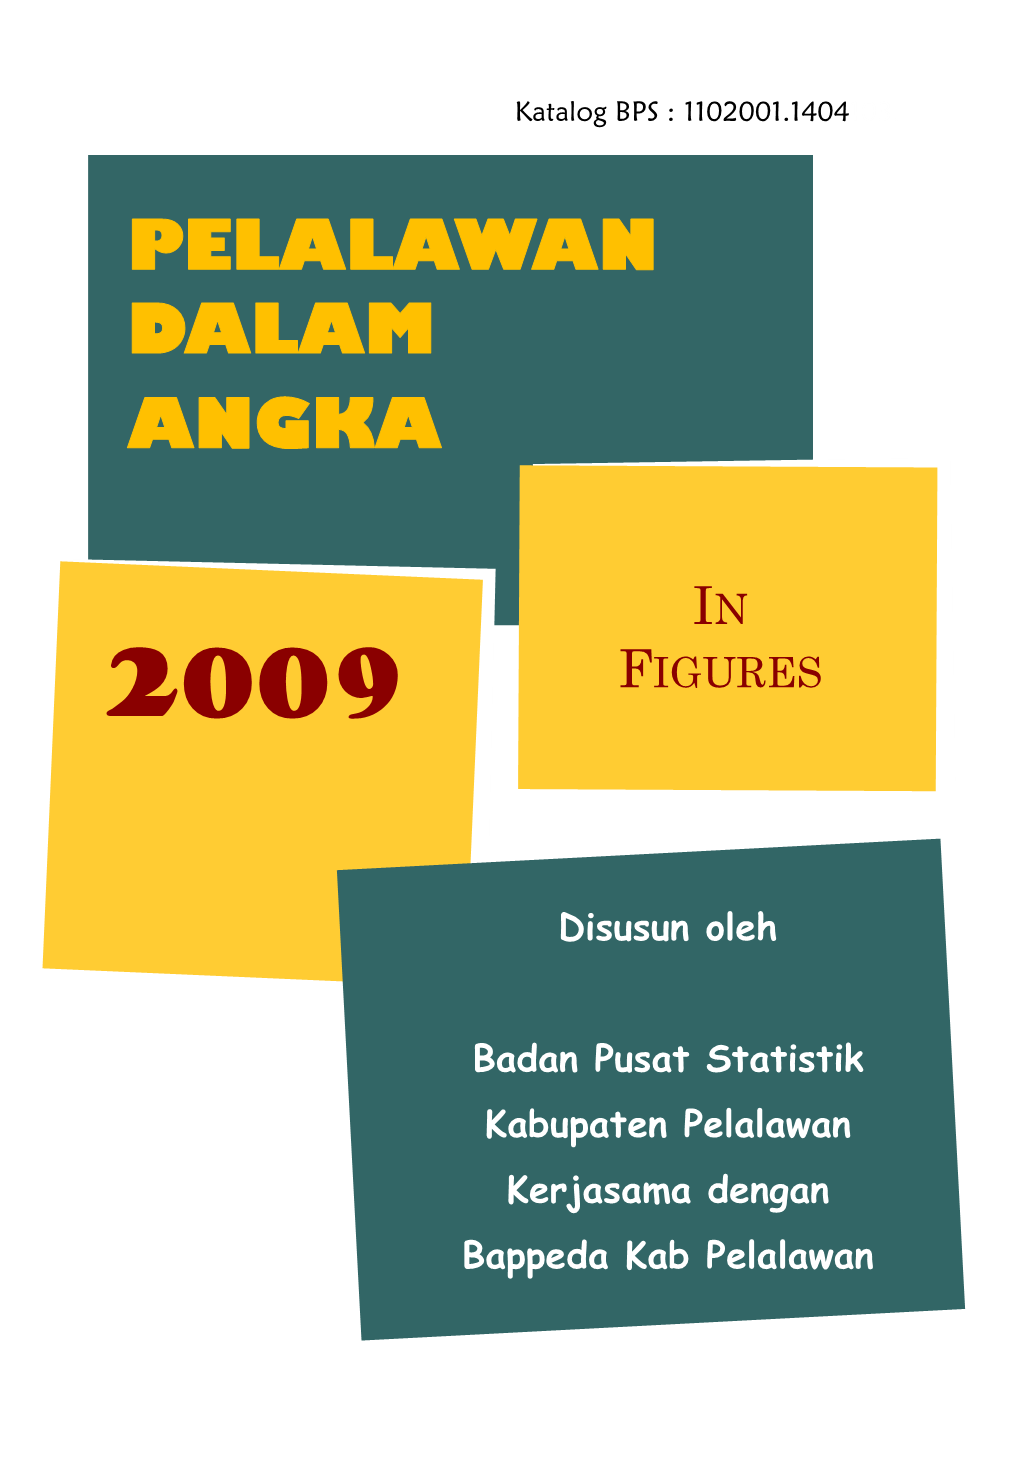 PELALAWAN DALAM ANGKA 2009" Yang Disusun Oleh Badan Pusat Statistik Kabupaten Pelalawan